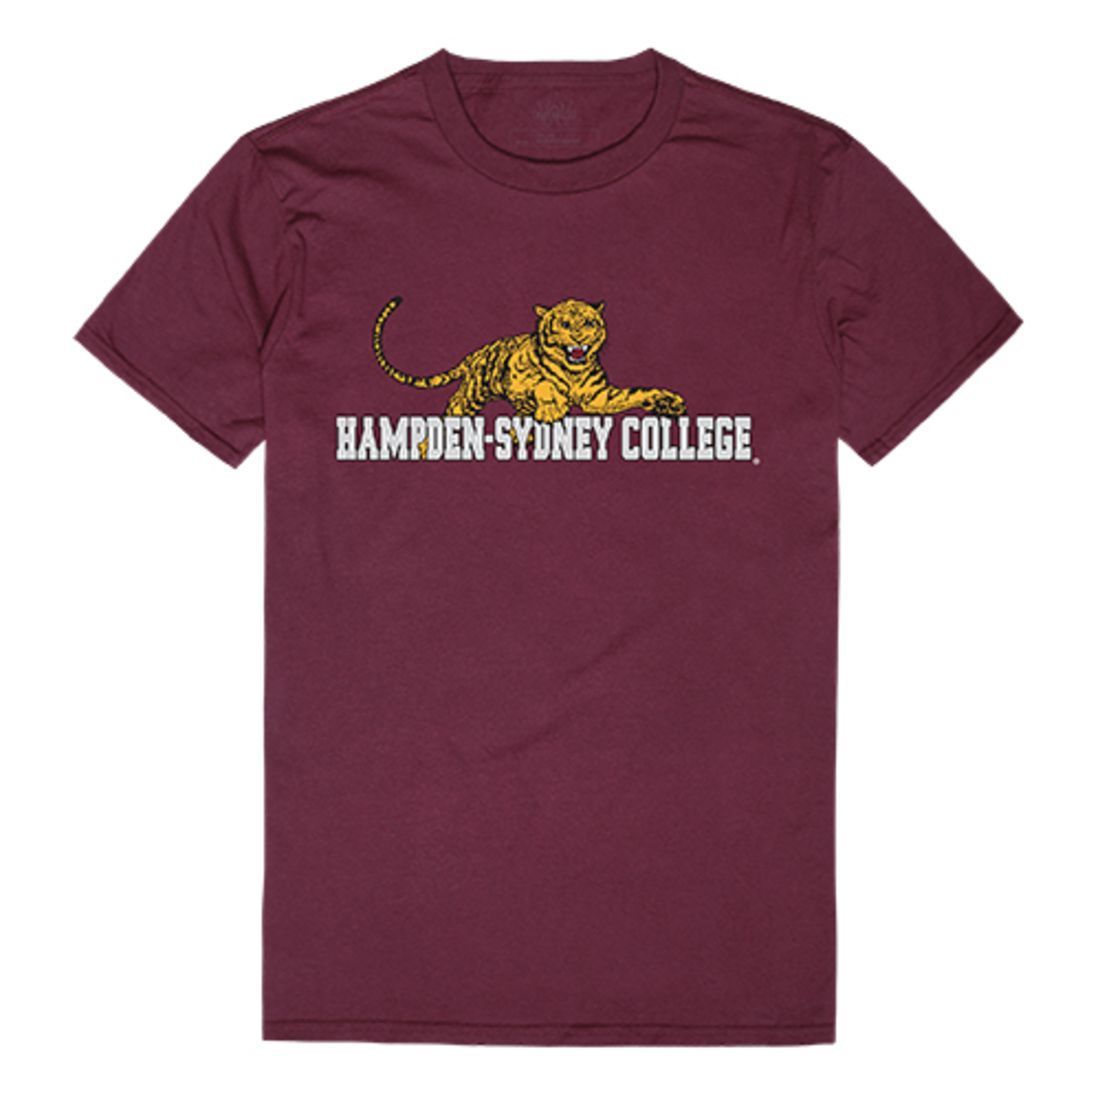 HSC Hampden-Sydney College Tigers Freshman Tee T-Shirt Maroon-Campus-Wardrobe